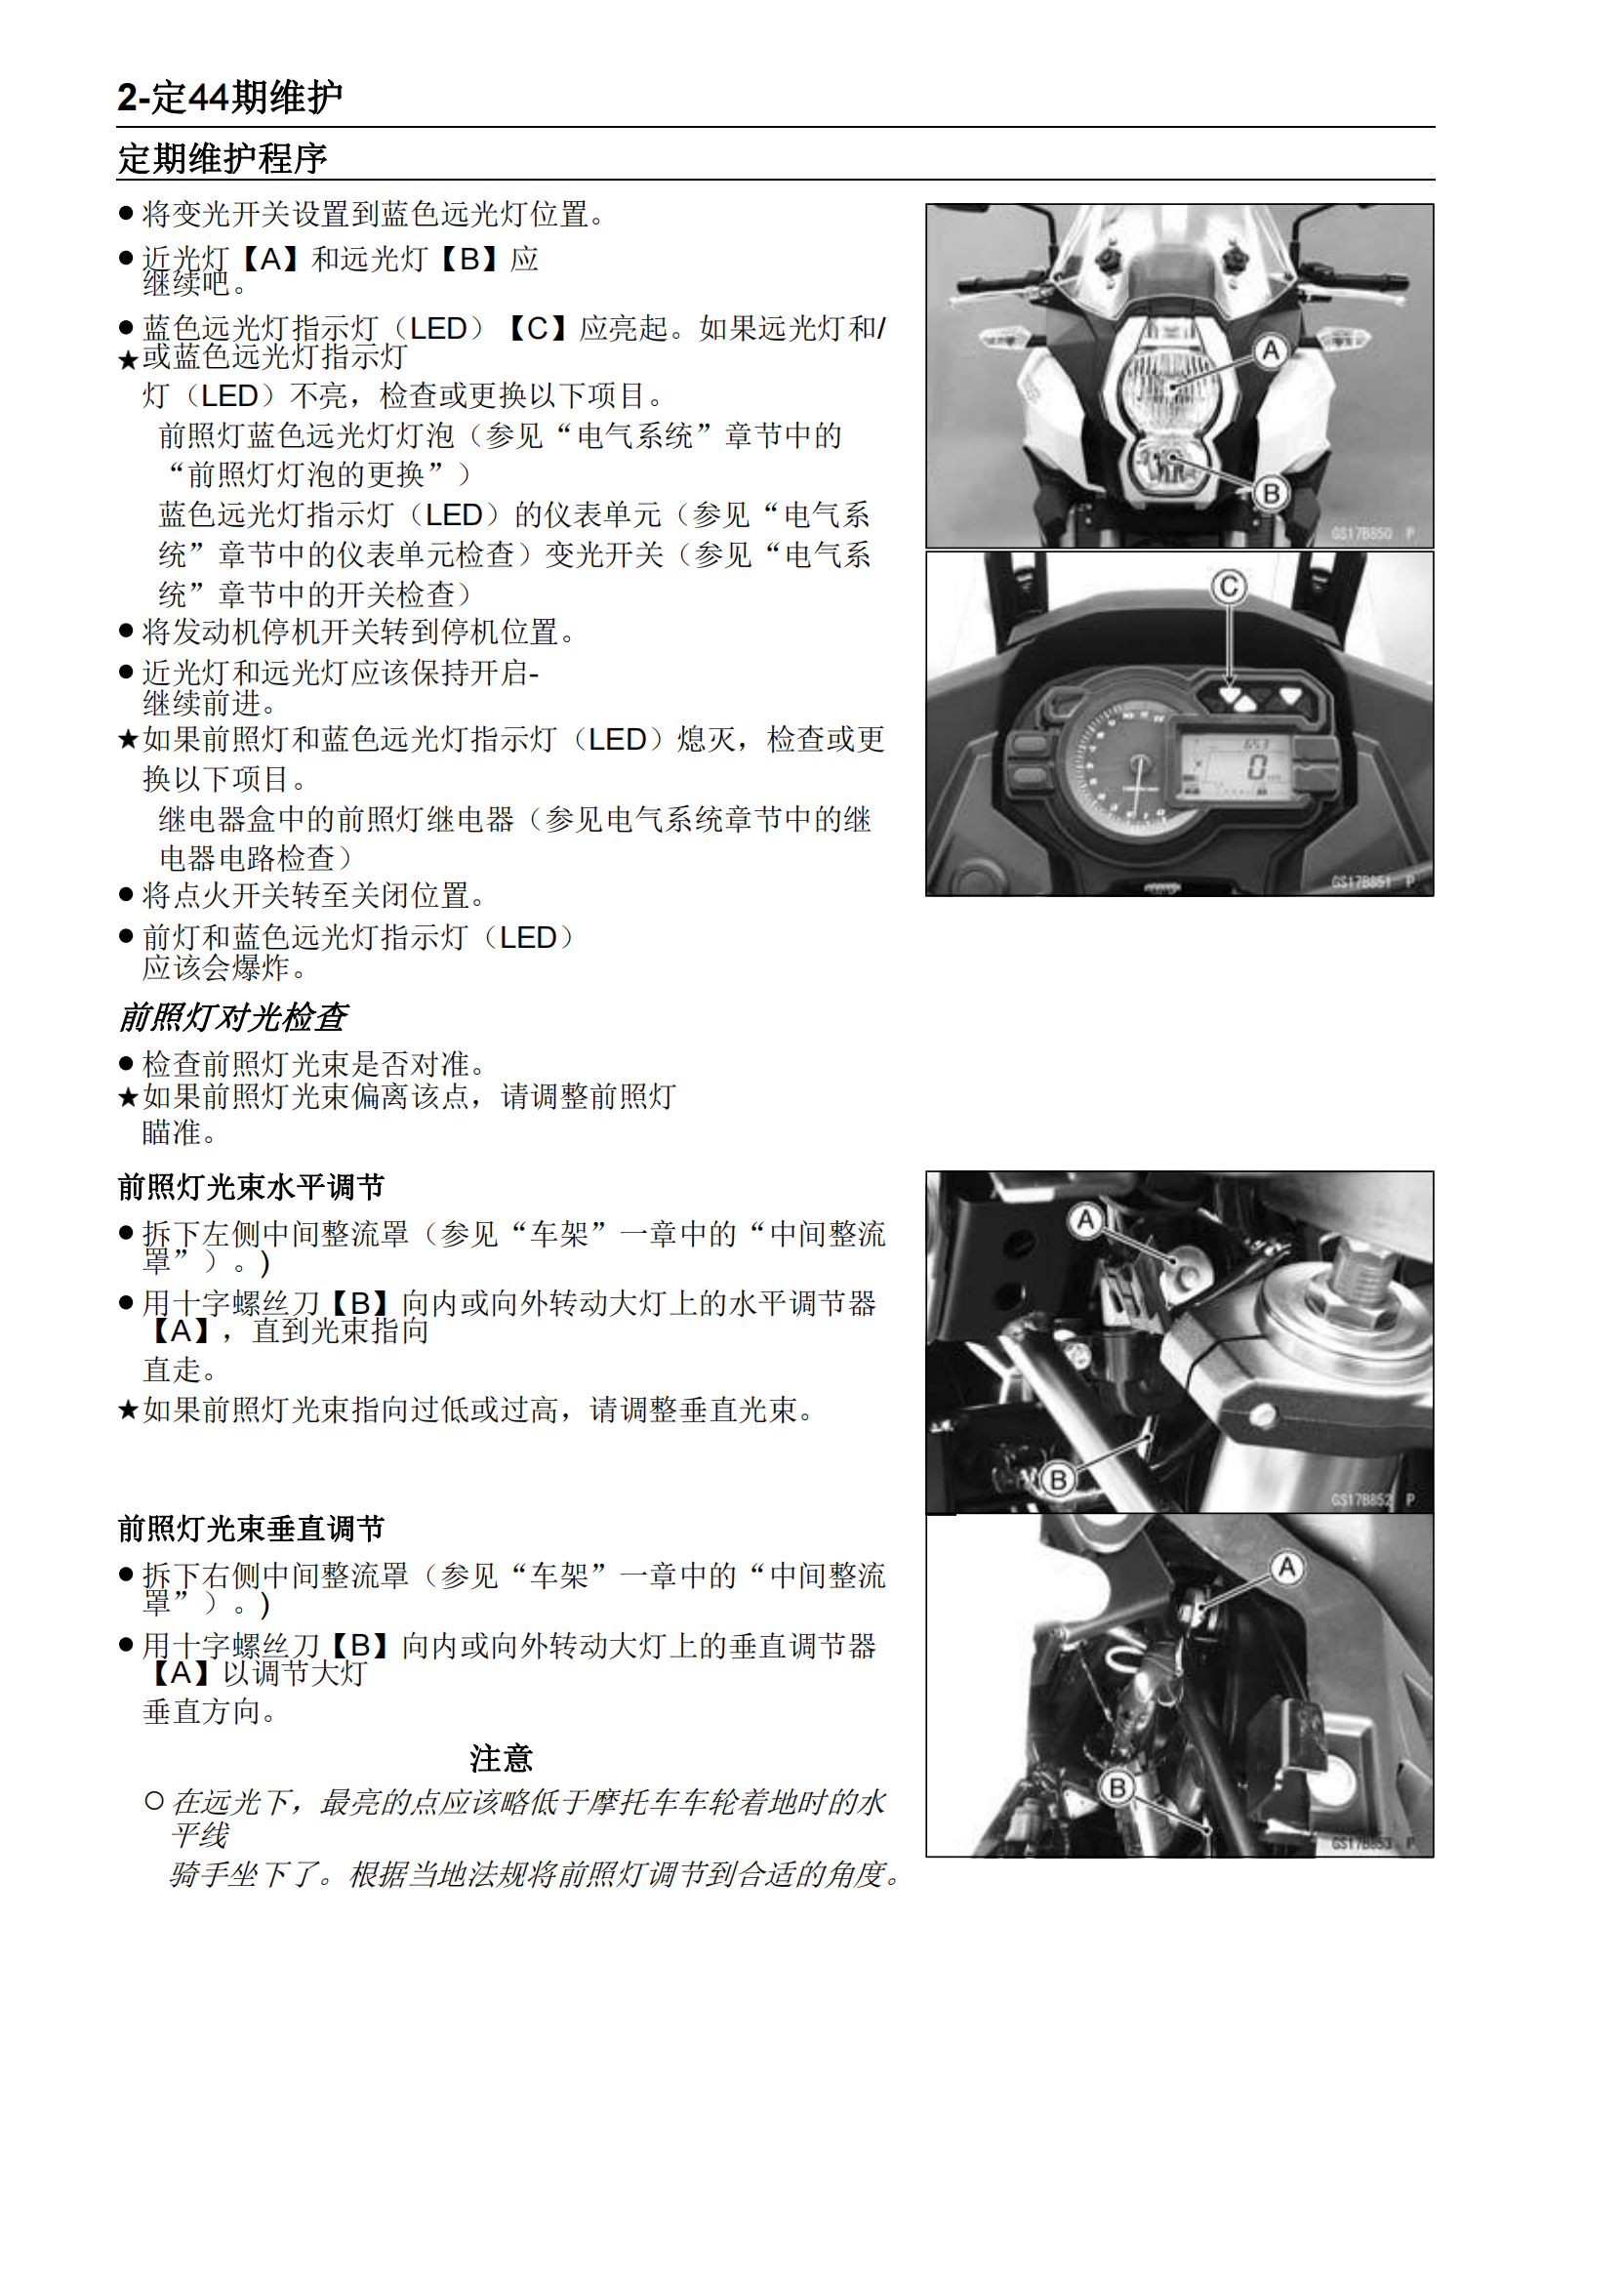 简体中文2011-2014年川崎异兽1000 Kawasaki Versys 1000 维修手册插图3